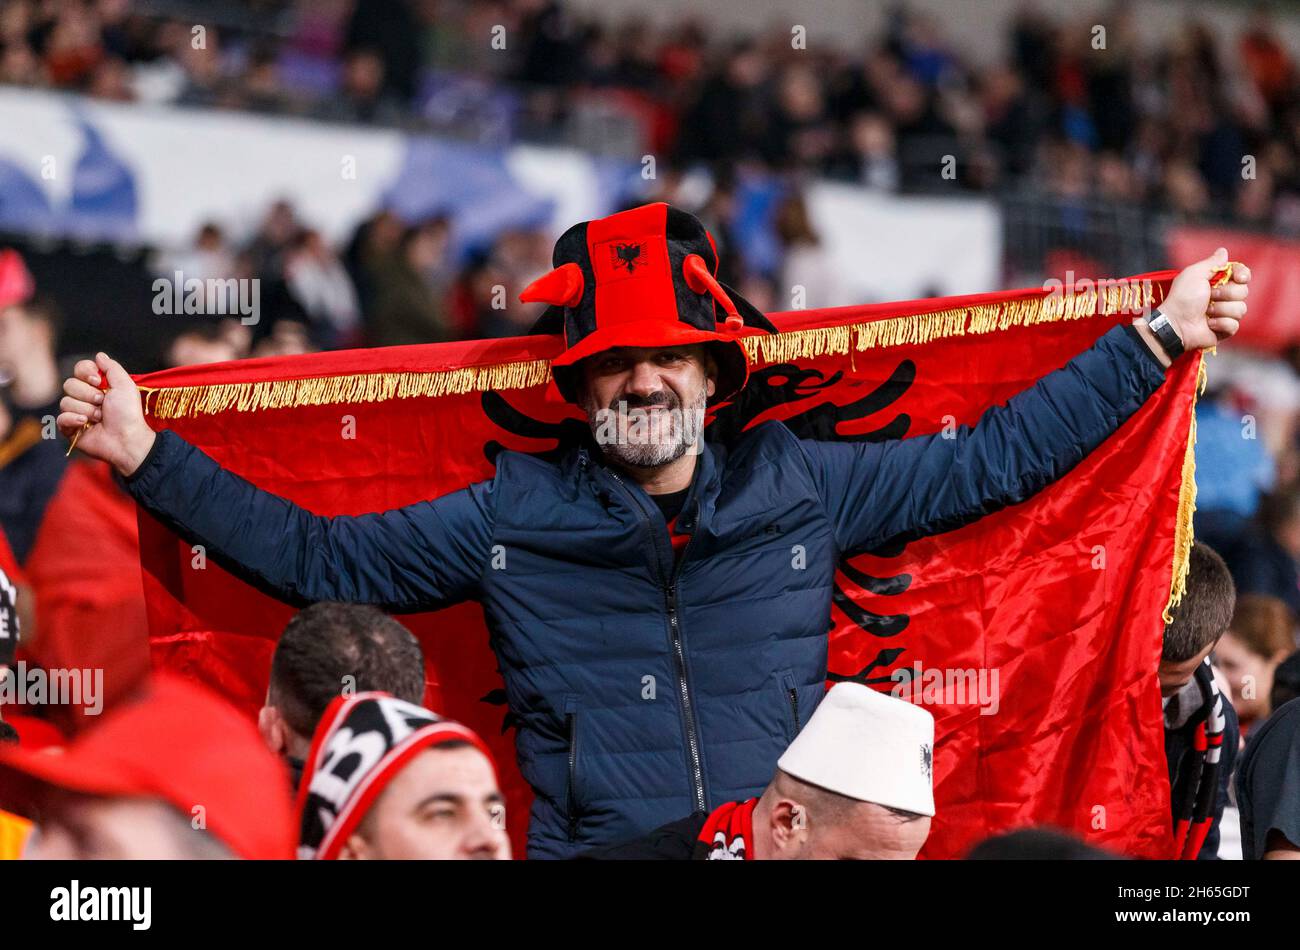 Londres, Royaume-Uni.12 novembre 2021.Albanie fans avant la coupe du monde de la FIFA 2022 qualification Groupe I match entre l'Angleterre et l'Albanie au stade Wembley le 12 novembre 2021 à Londres, Angleterre.(Photo de Daniel Chesterton/phcimages.com) Credit: PHC Images/Alamy Live News Banque D'Images